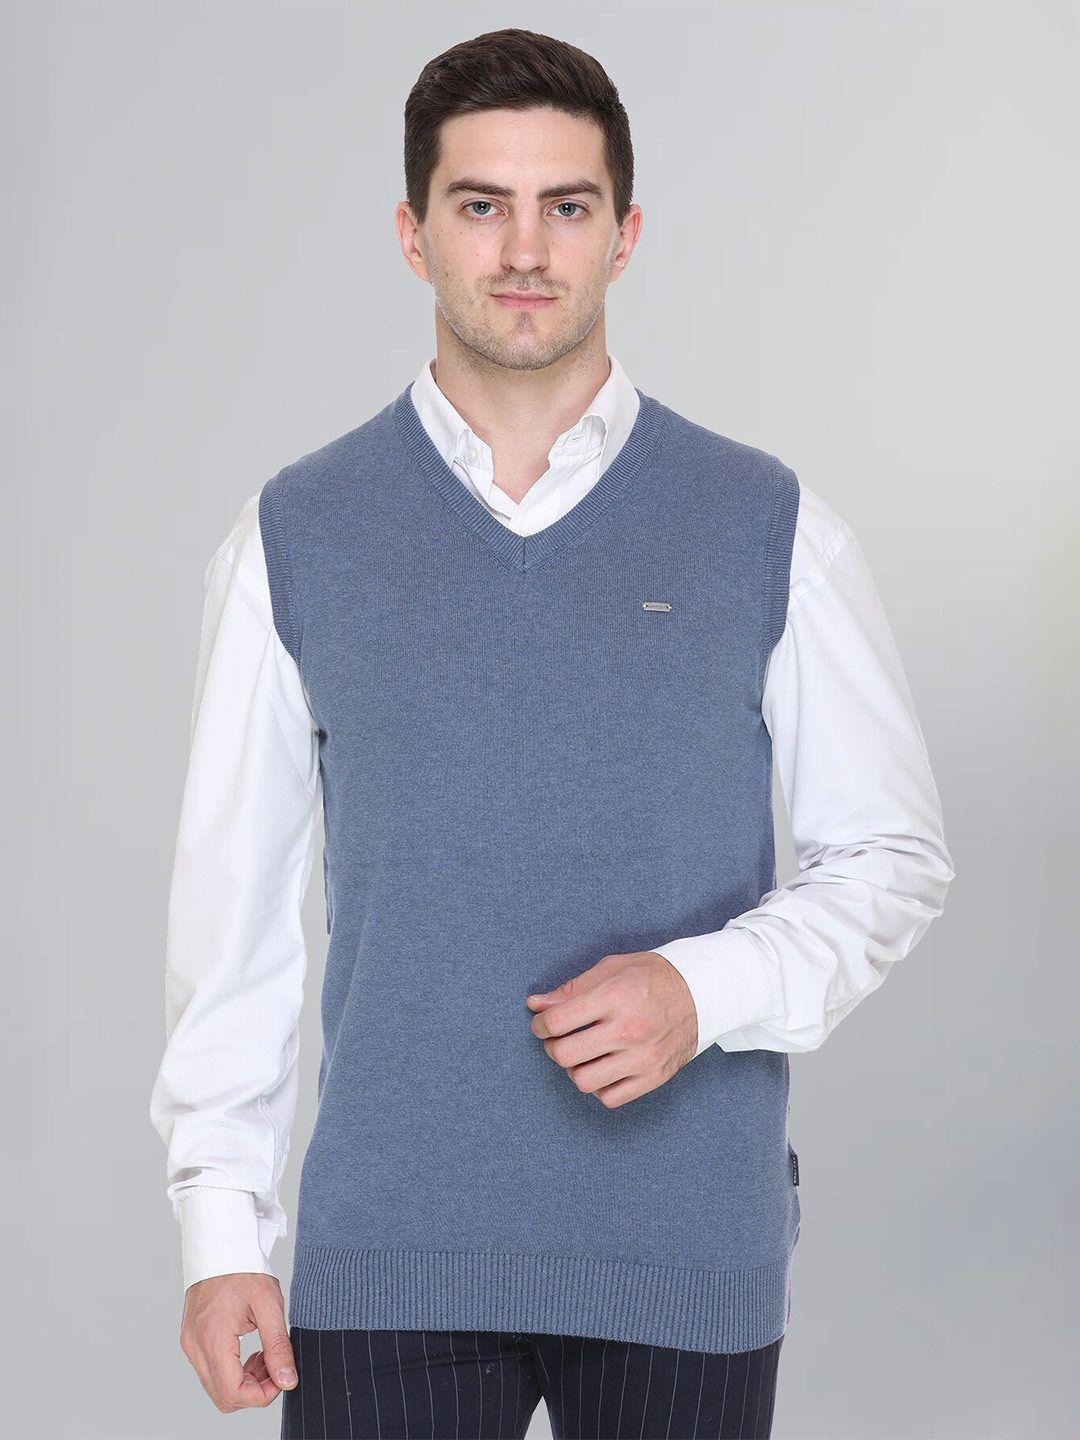 godfrey v-neck woollen sweater vest